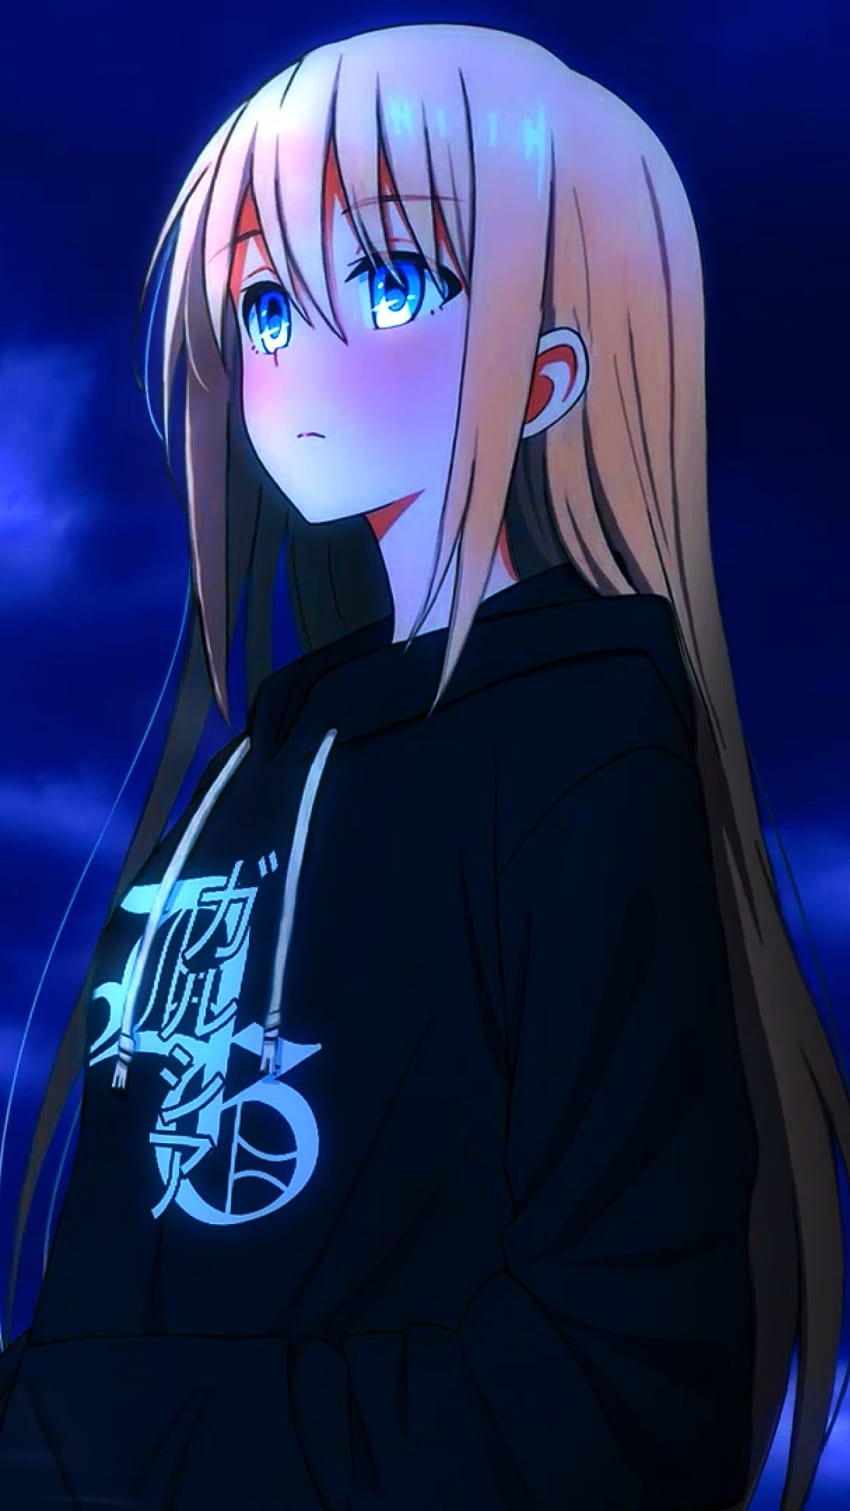 Sad Anime girl